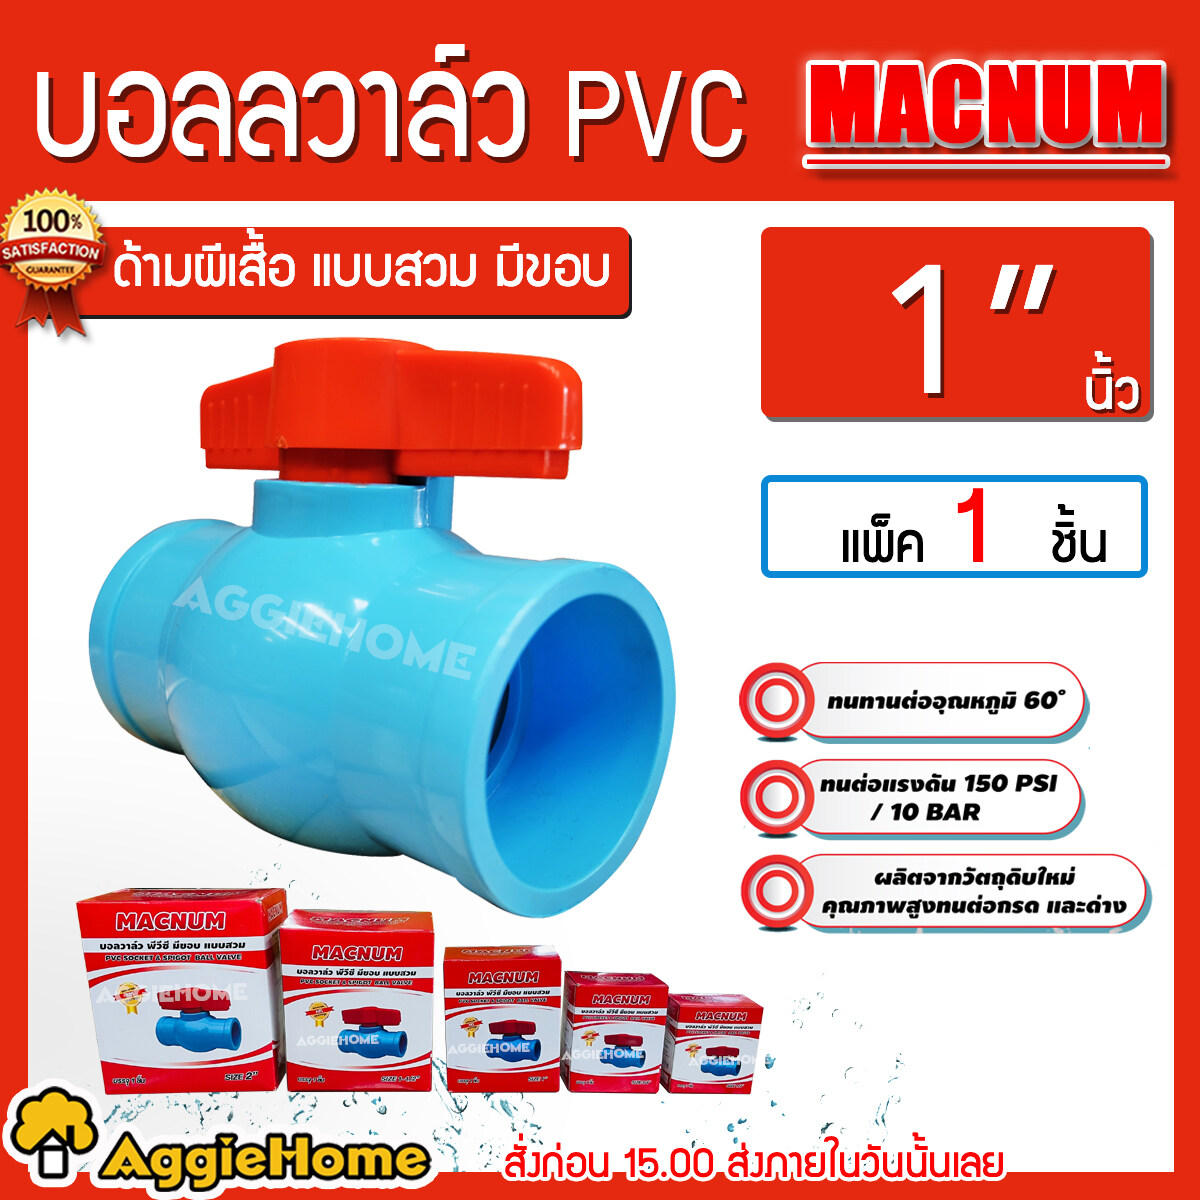 MACNUM บอลวาล์ว PVC ขนาด 1 นิ้ว สีฟ้า